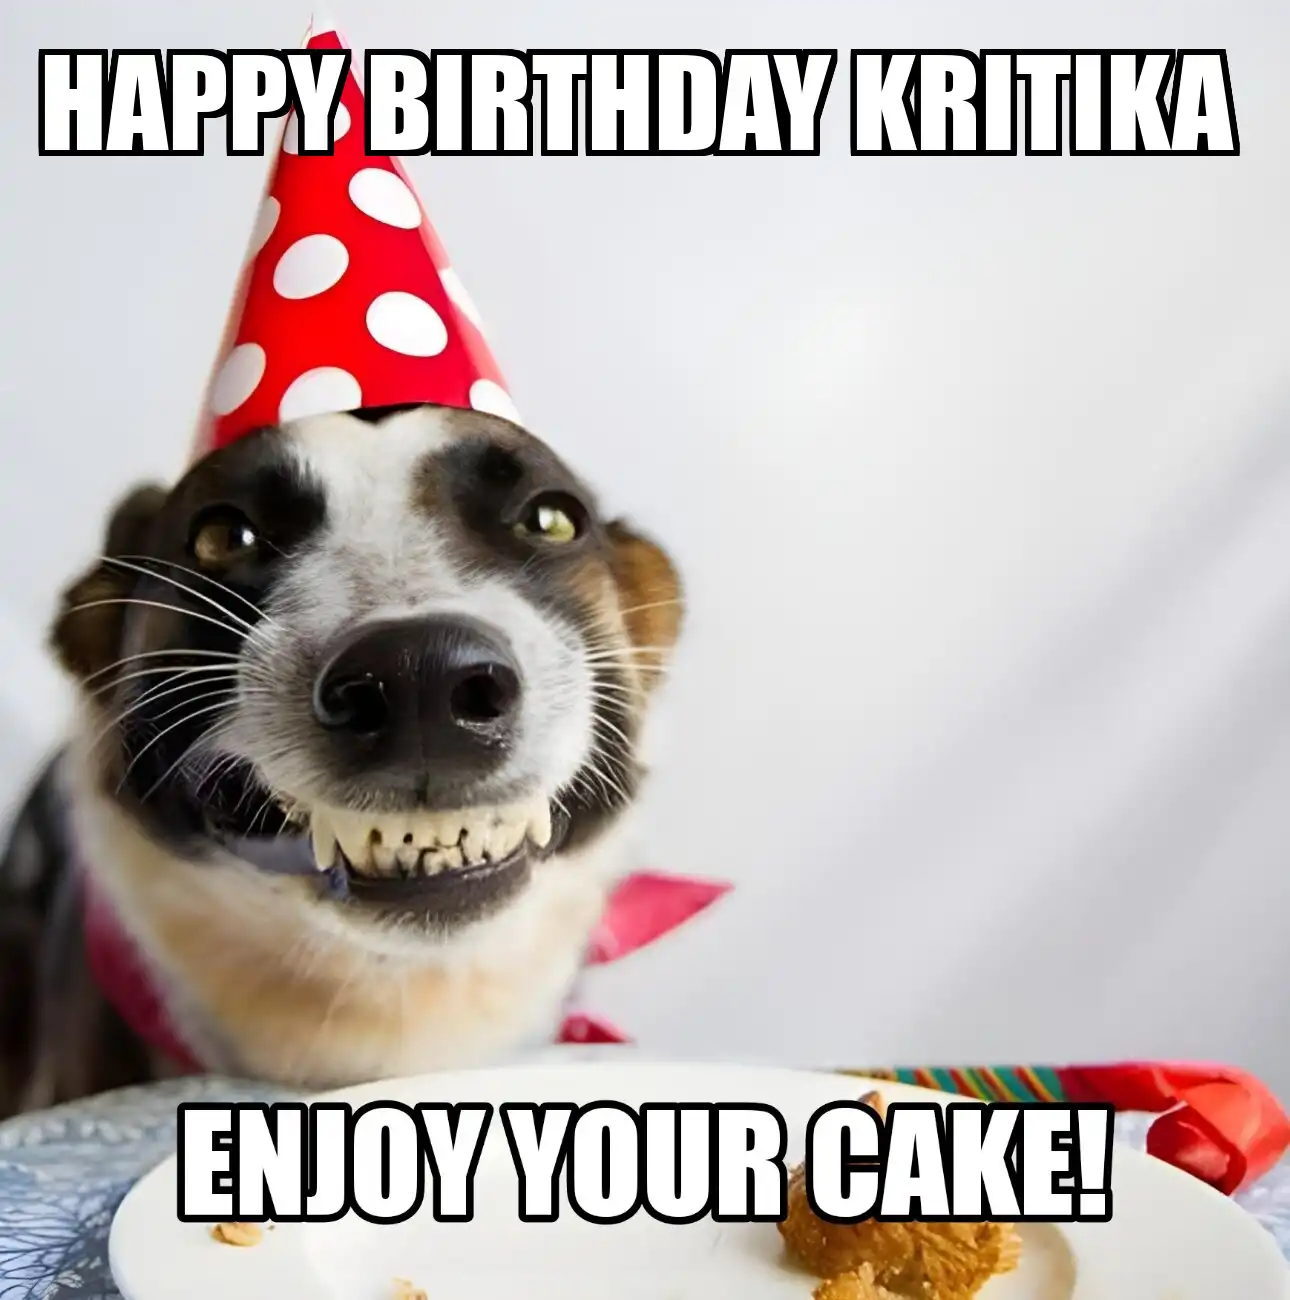 Happy Birthday Kritika Enjoy Your Cake Dog Meme